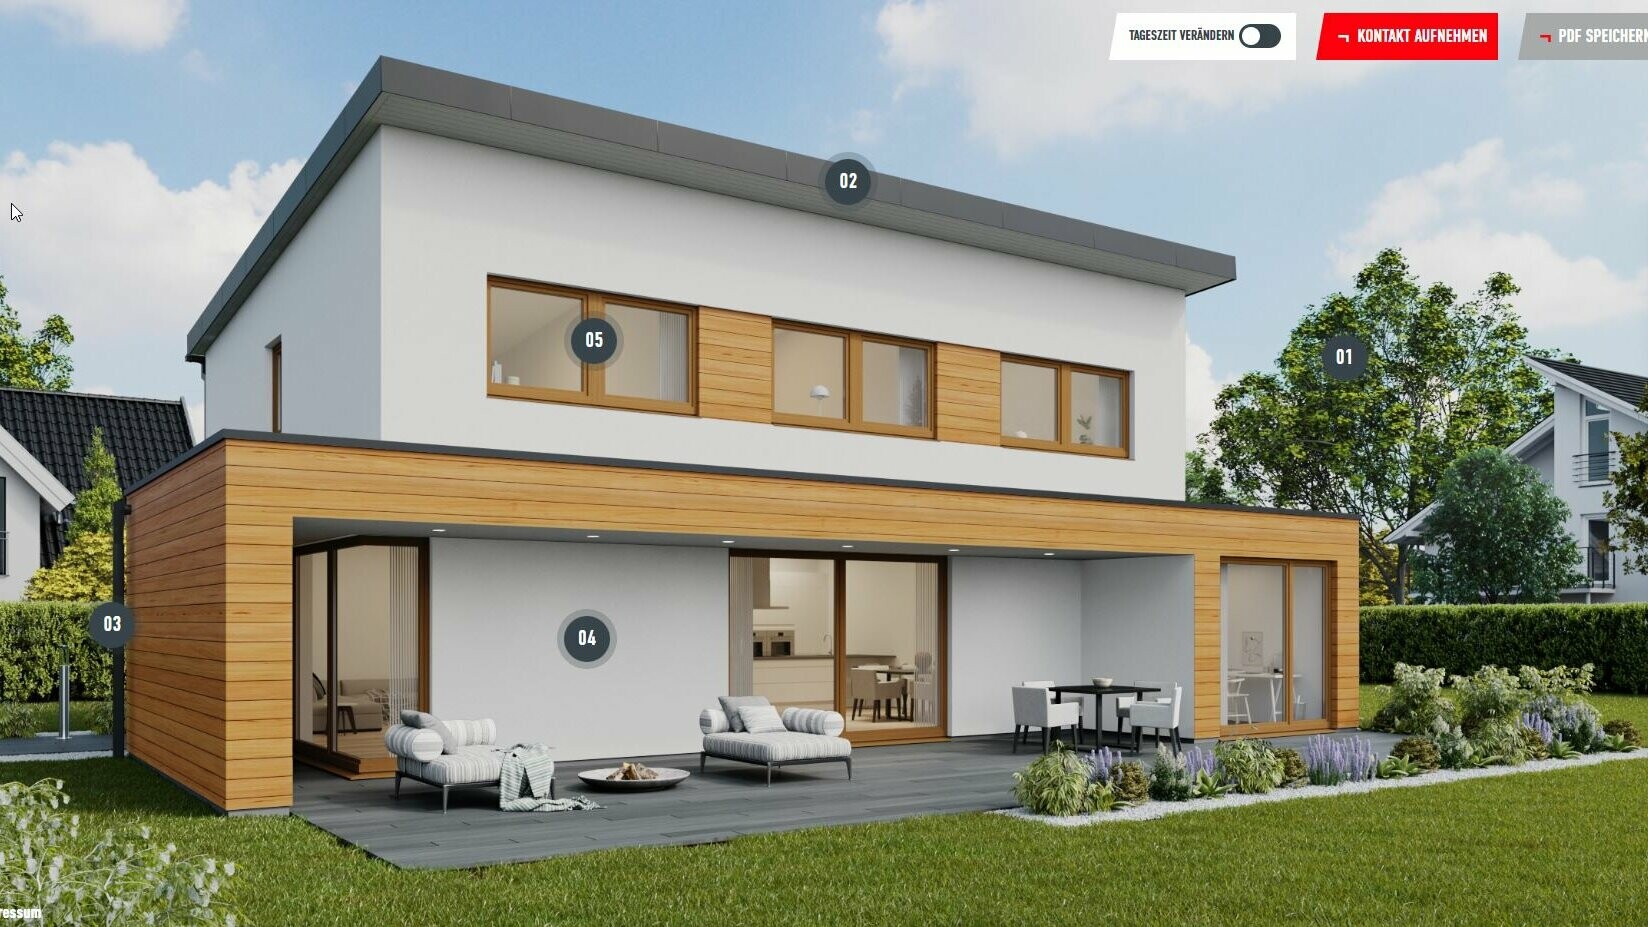 Exemple de fenêtre de configuration d’une maison individuelle dotée d’un toit monopente dans la couleur P.10 noir, avec éléments en bois sur la façade. La maison se trouve dans une zone d’habitation en banlieue.